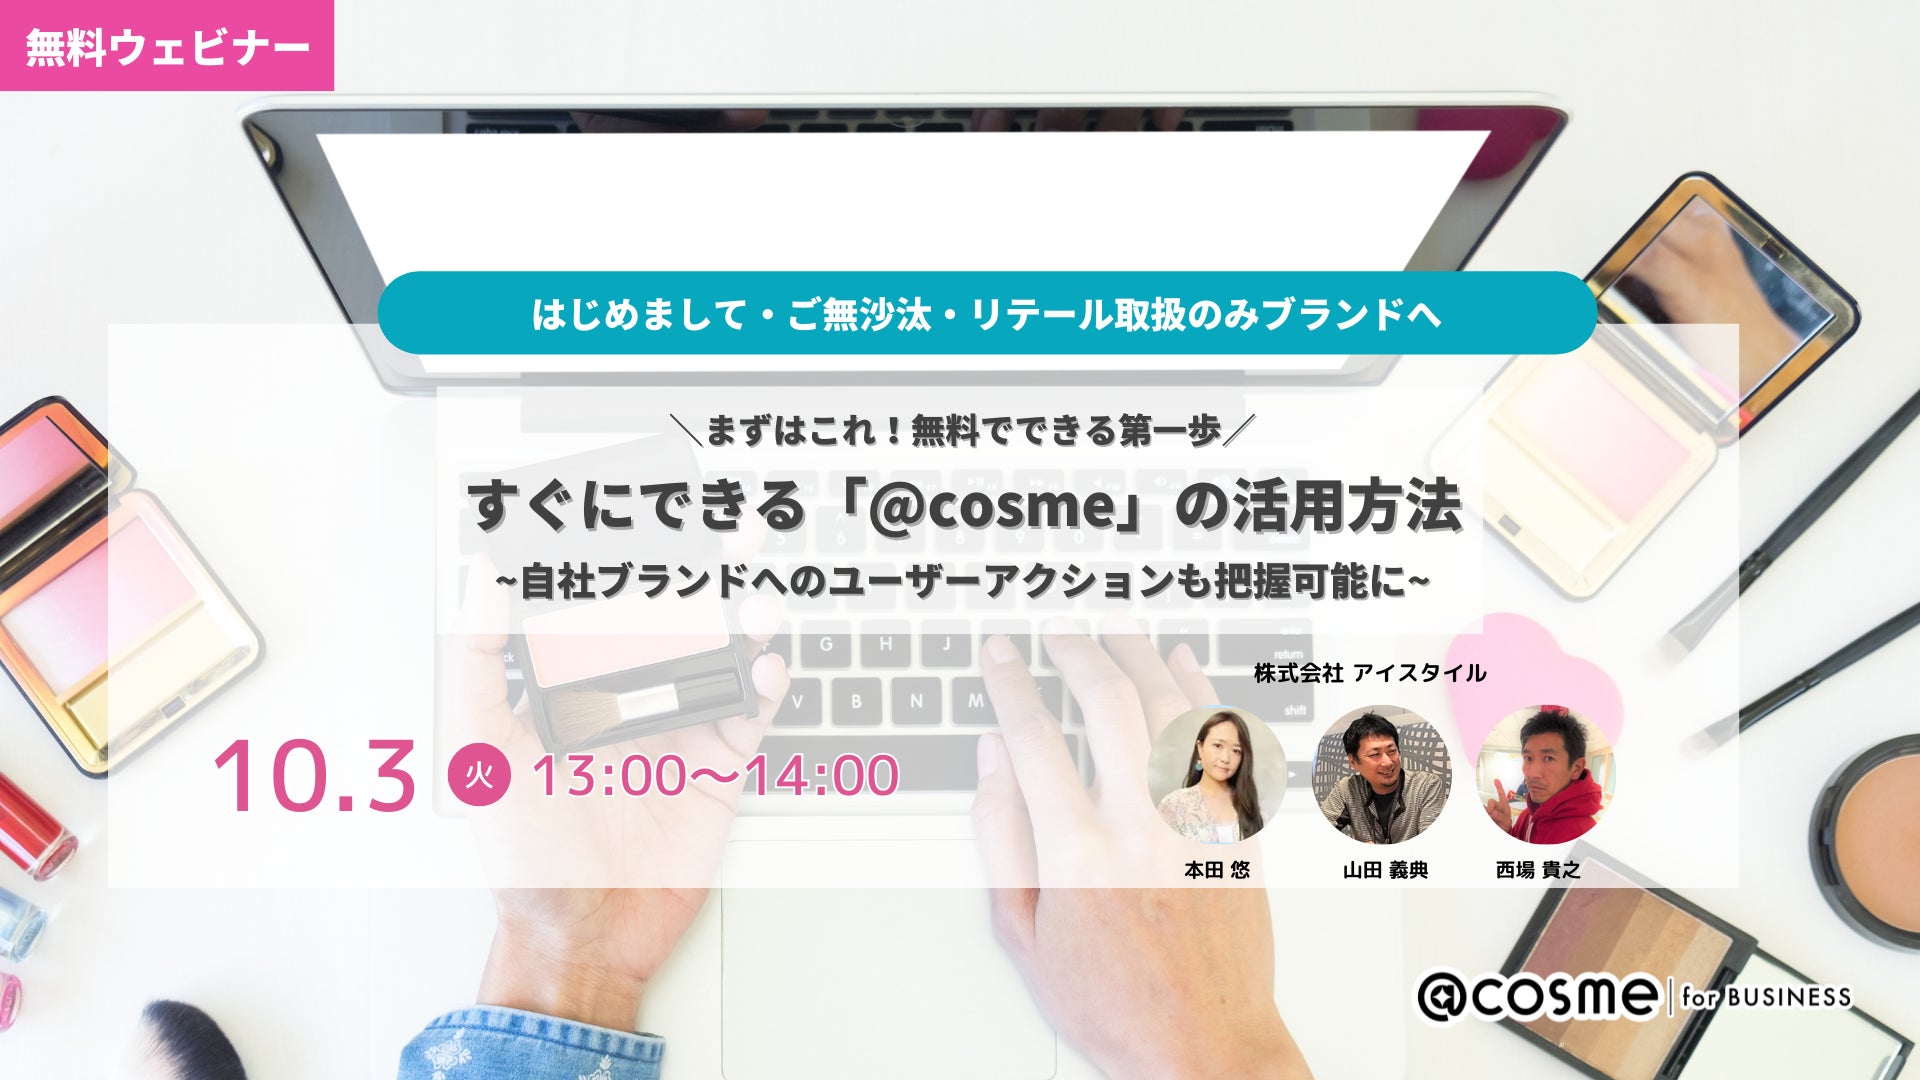 ウェビナー『まずはこれ！無料でできる第一歩。すぐにできる「@cosme」の活用方法』10月3日(火)13:00開催